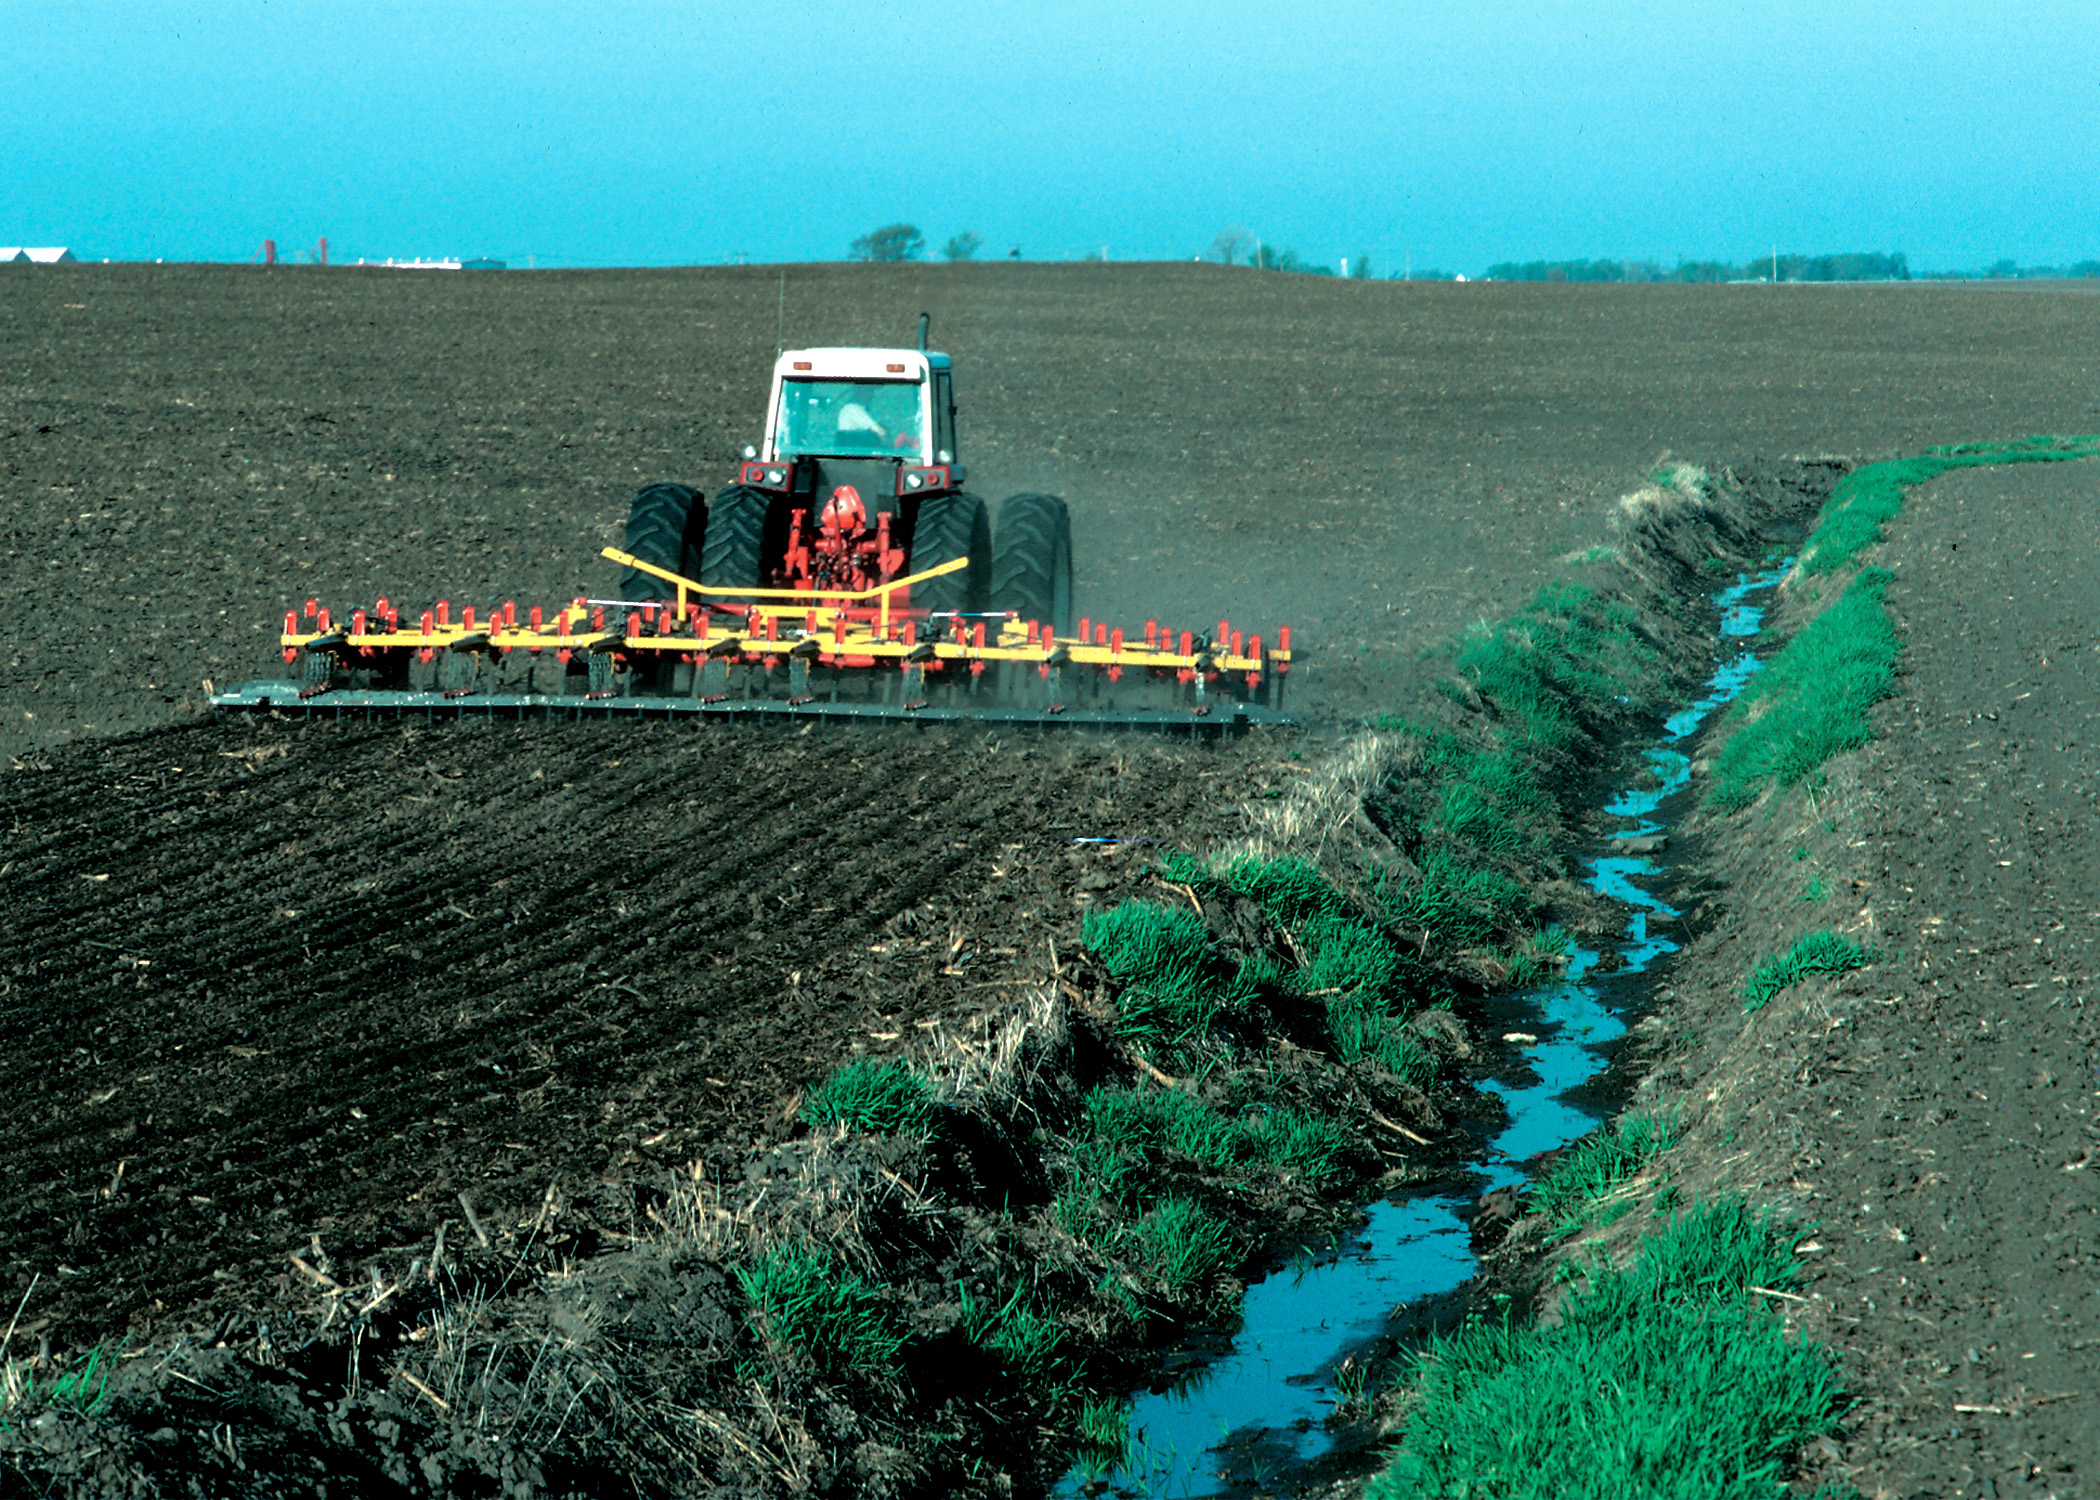 Contaminación del agua de origen agrícola como en la imagen del tractor echando fertilizantes en el suelo que pueden filtrarse hasta los acuíferos